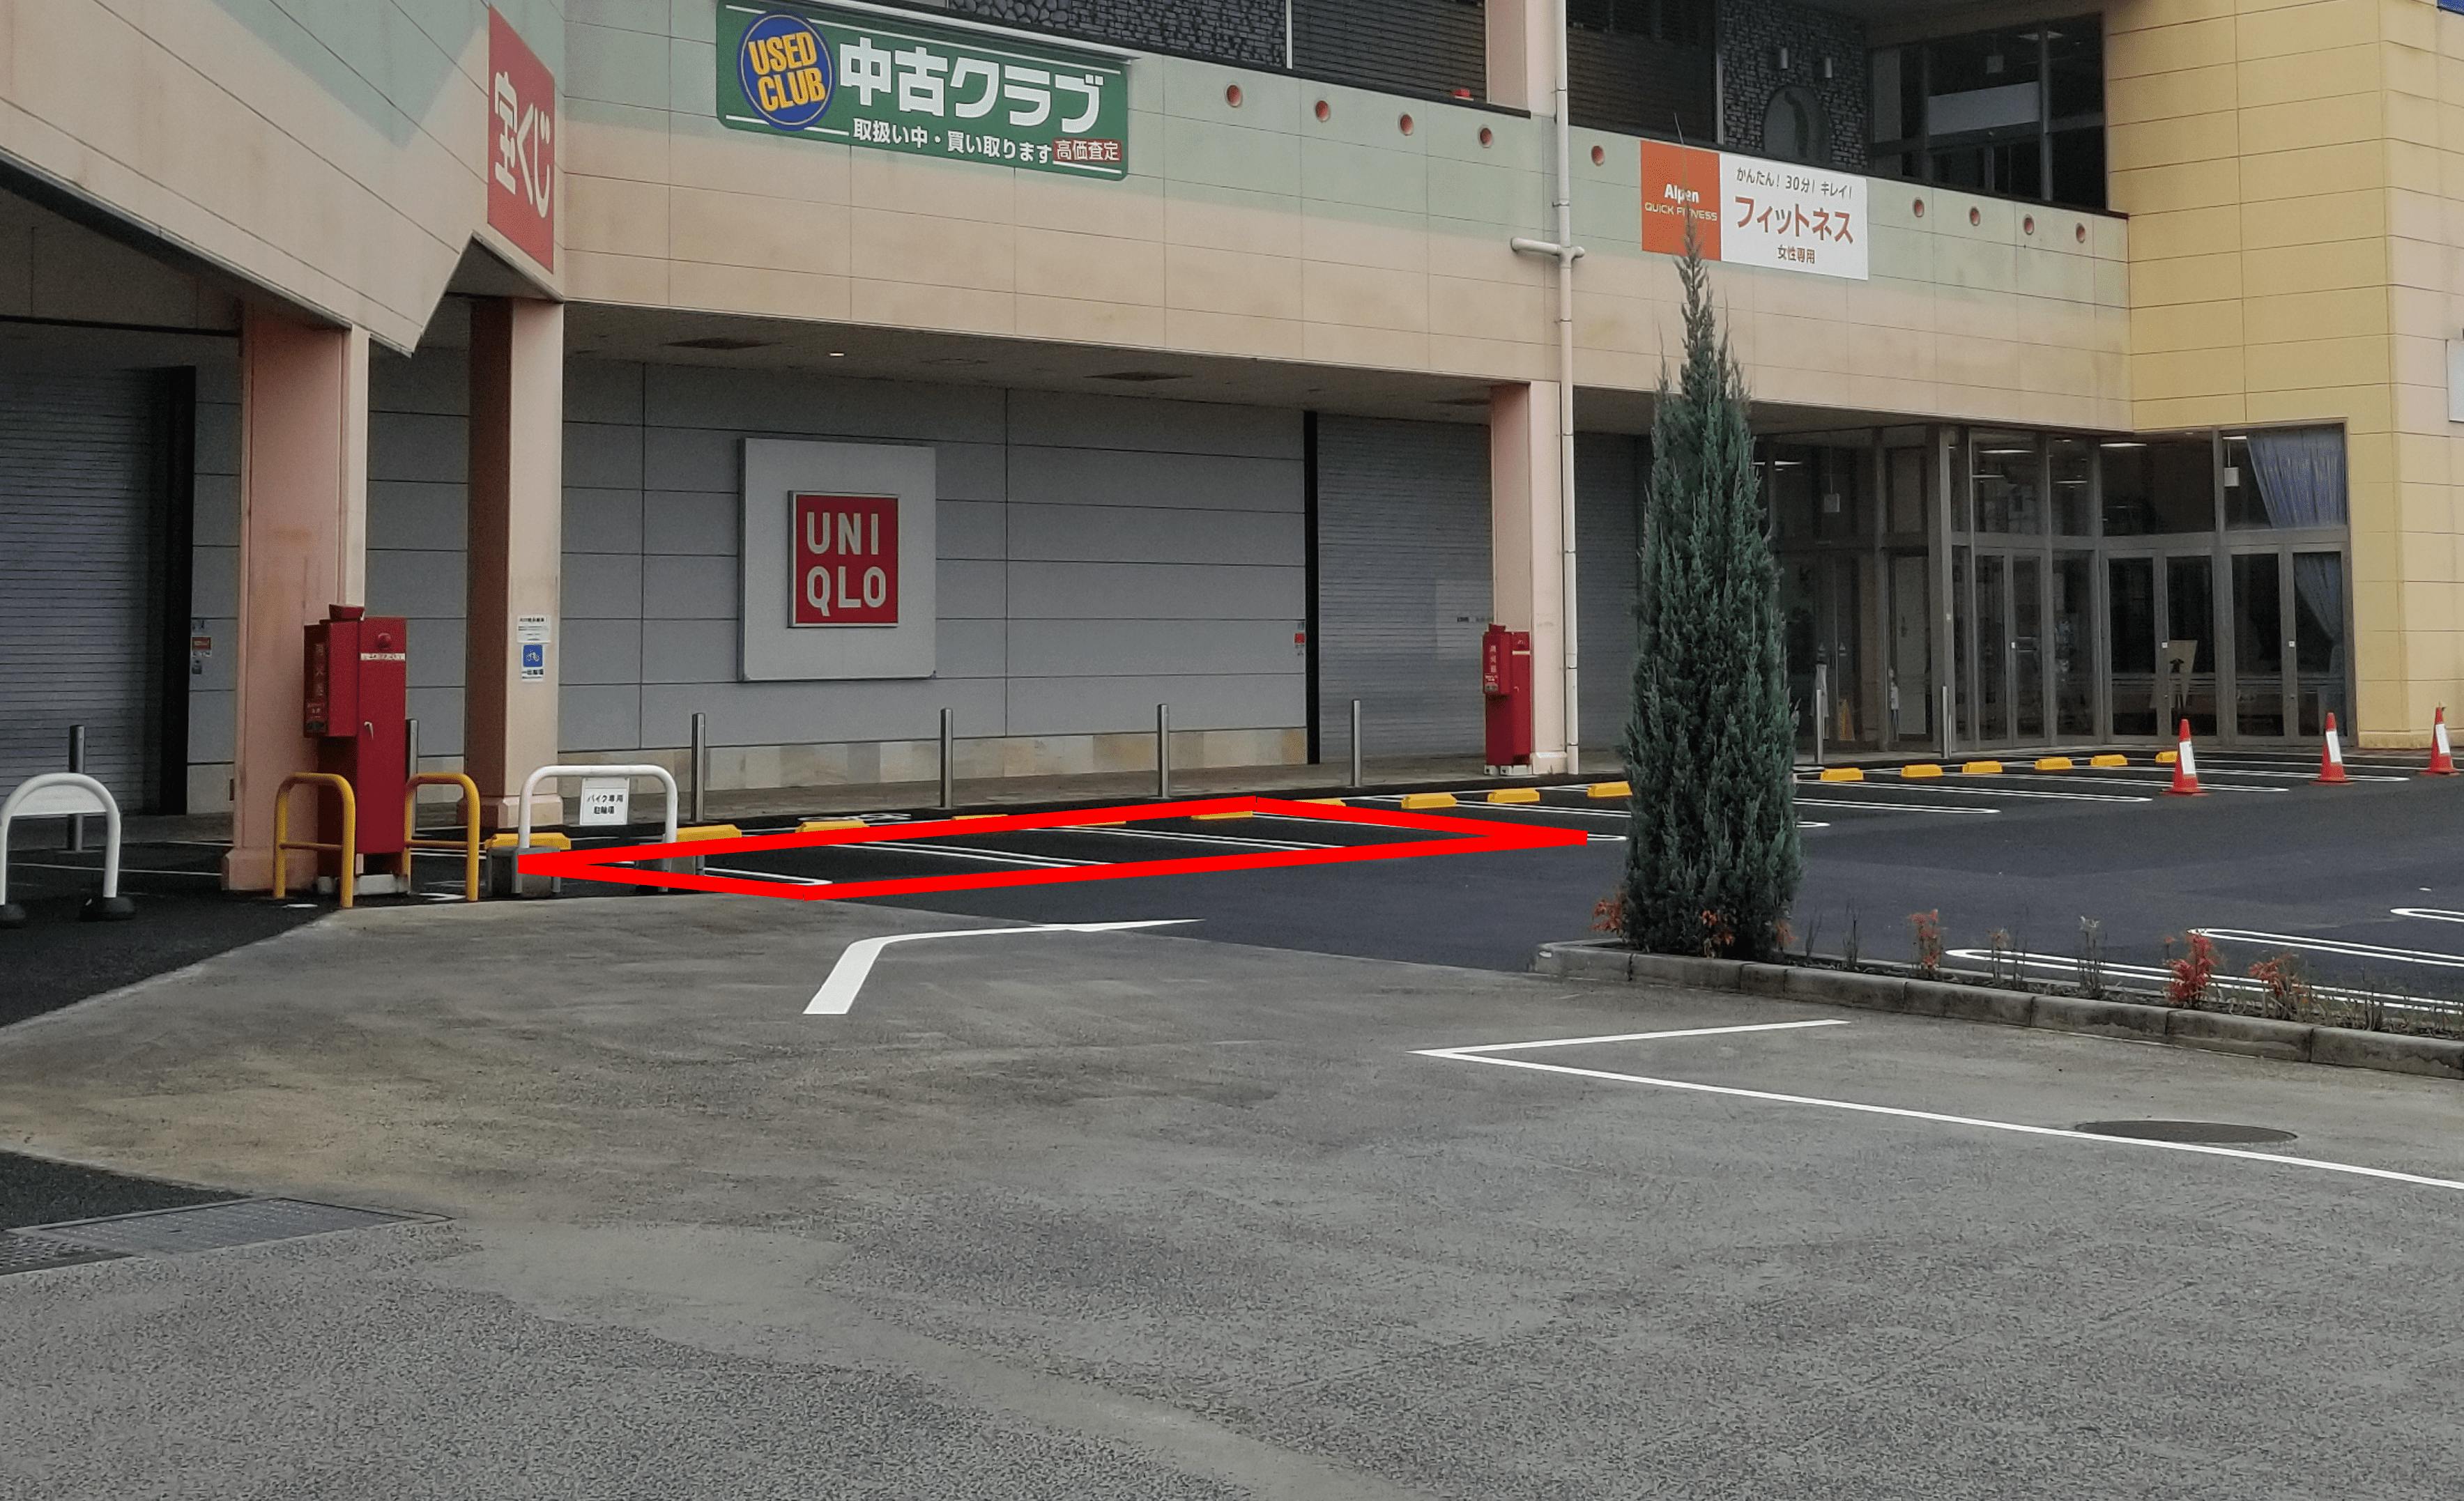 正面駐車場、向かって左側３台分の駐車スペースです。目立ちます。